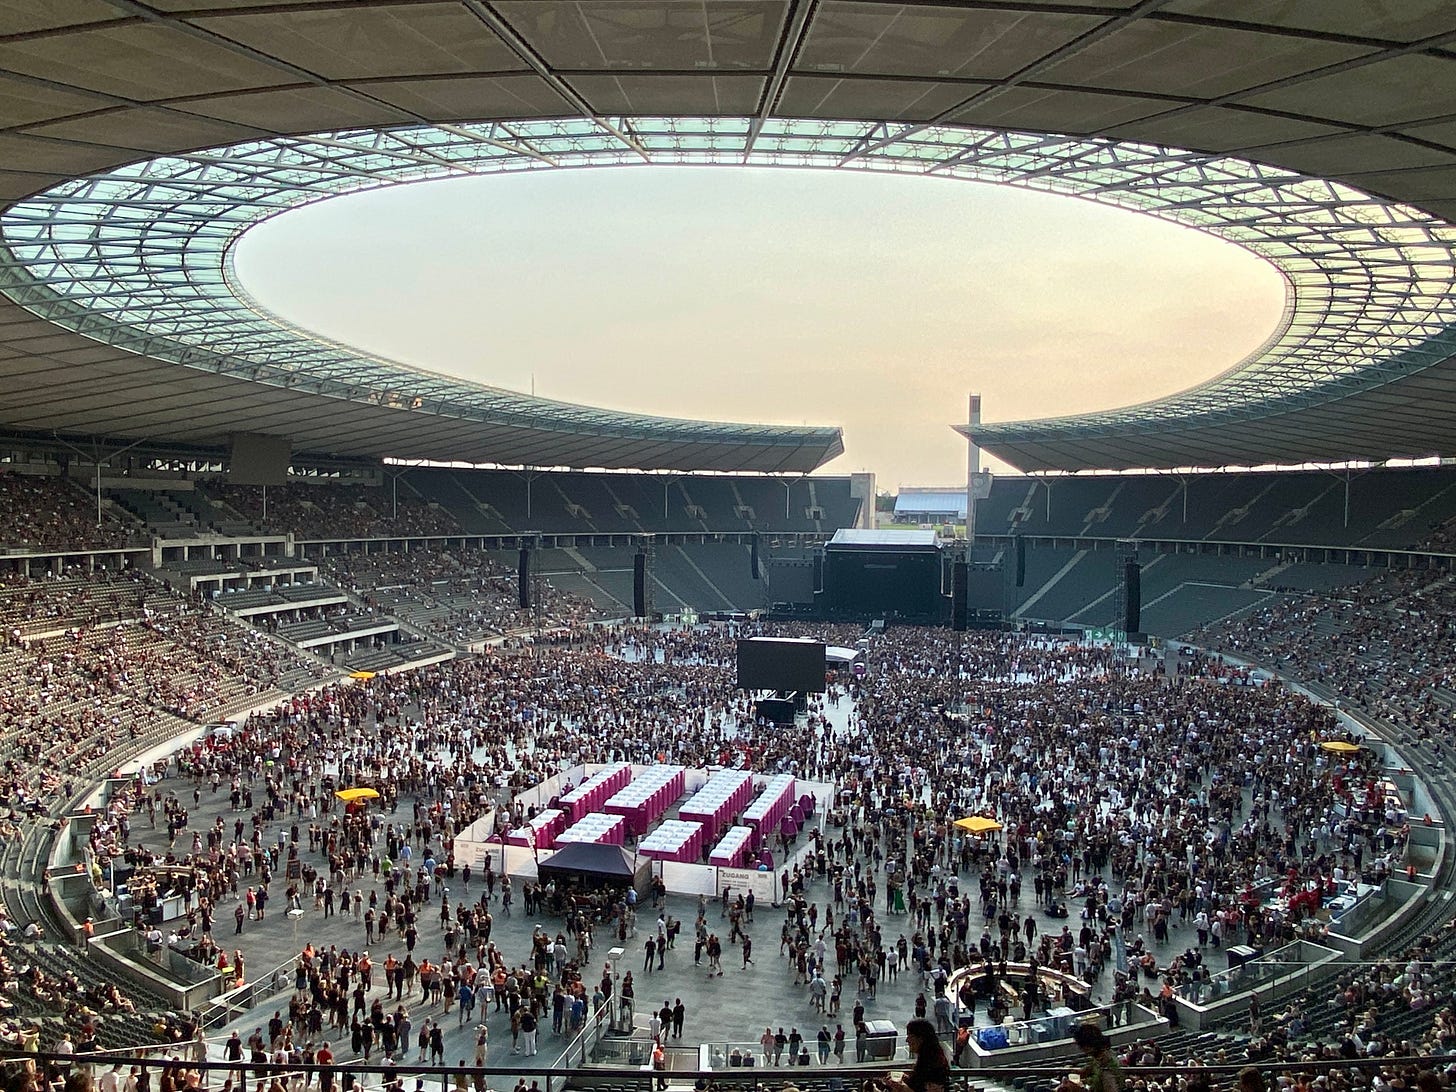 Imagem do estádio vista de cima. Teto oval aberto com o céu laranja. A pista está lotada de gente, tem um telão no meio e o palco aos fundos.